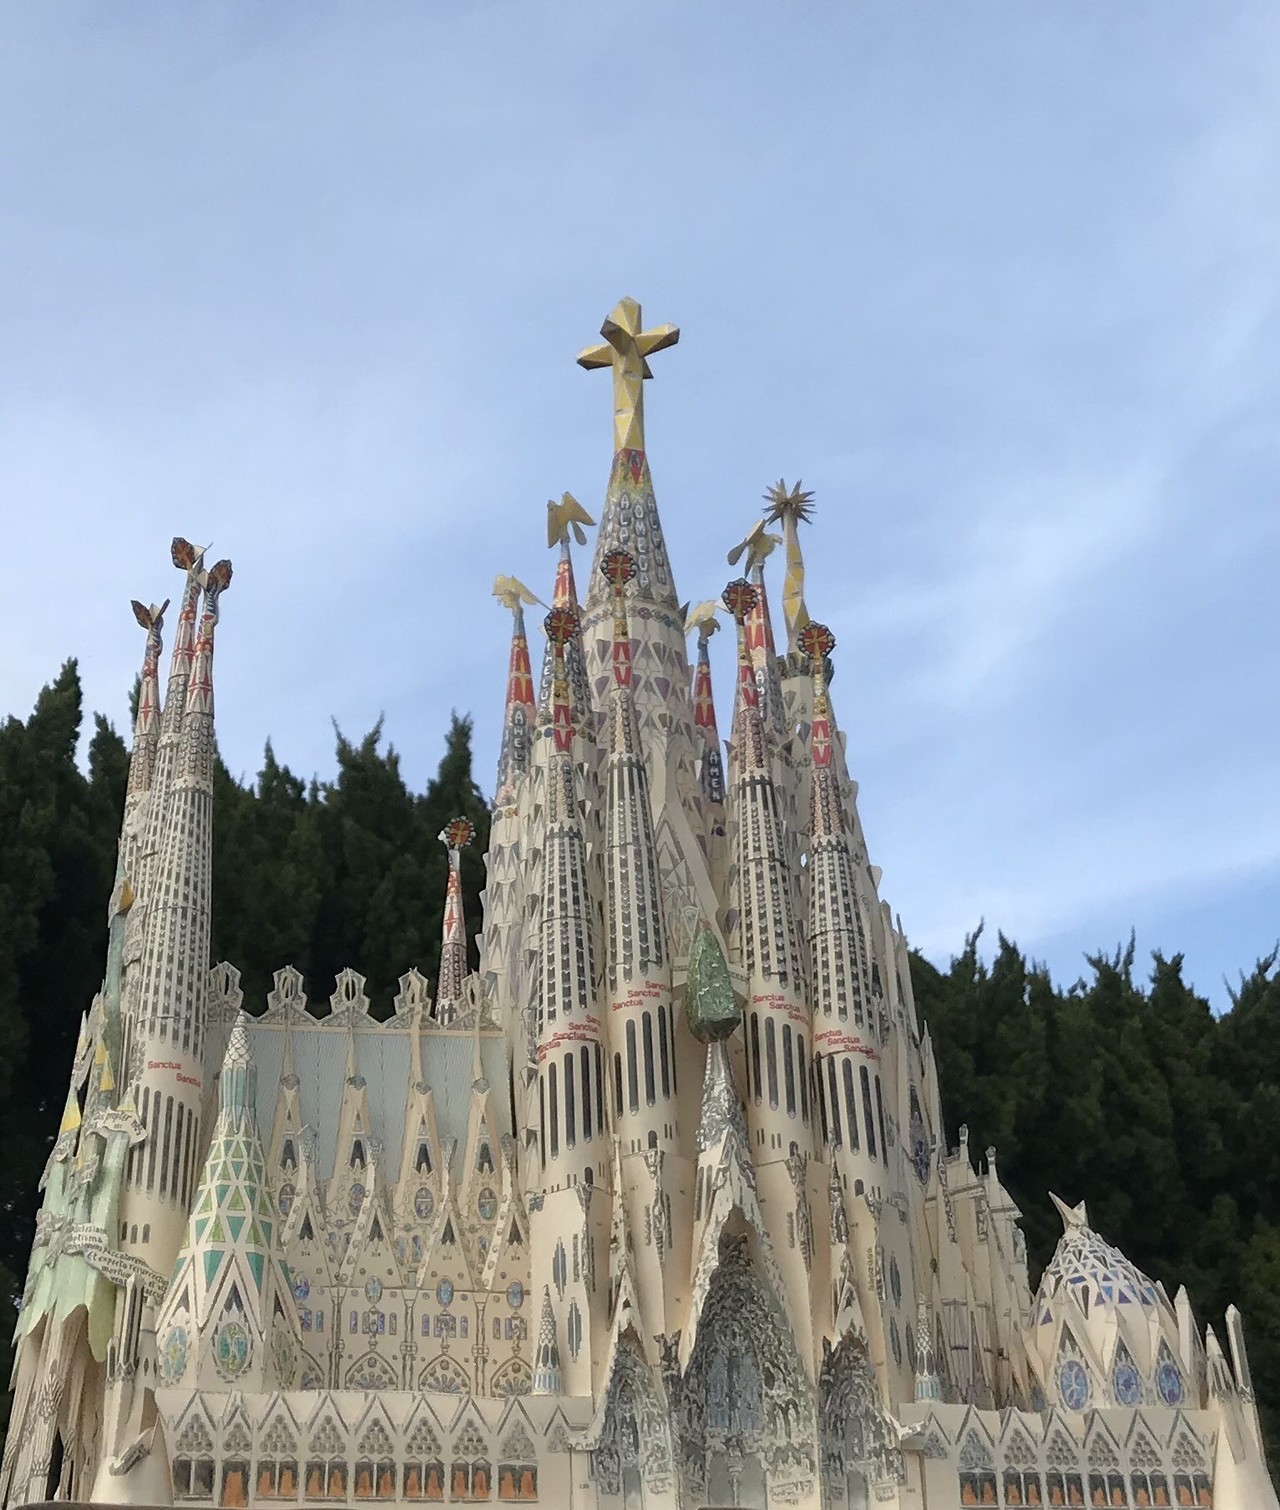 おうちでスペイン 26年に完成予定と発表されたガウディのサグラダ ファミリア聖堂 壮麗な完成後の姿を ご自宅で再現してみませんか ペーパークラフト Stayathomechallenge 西村書店 Note